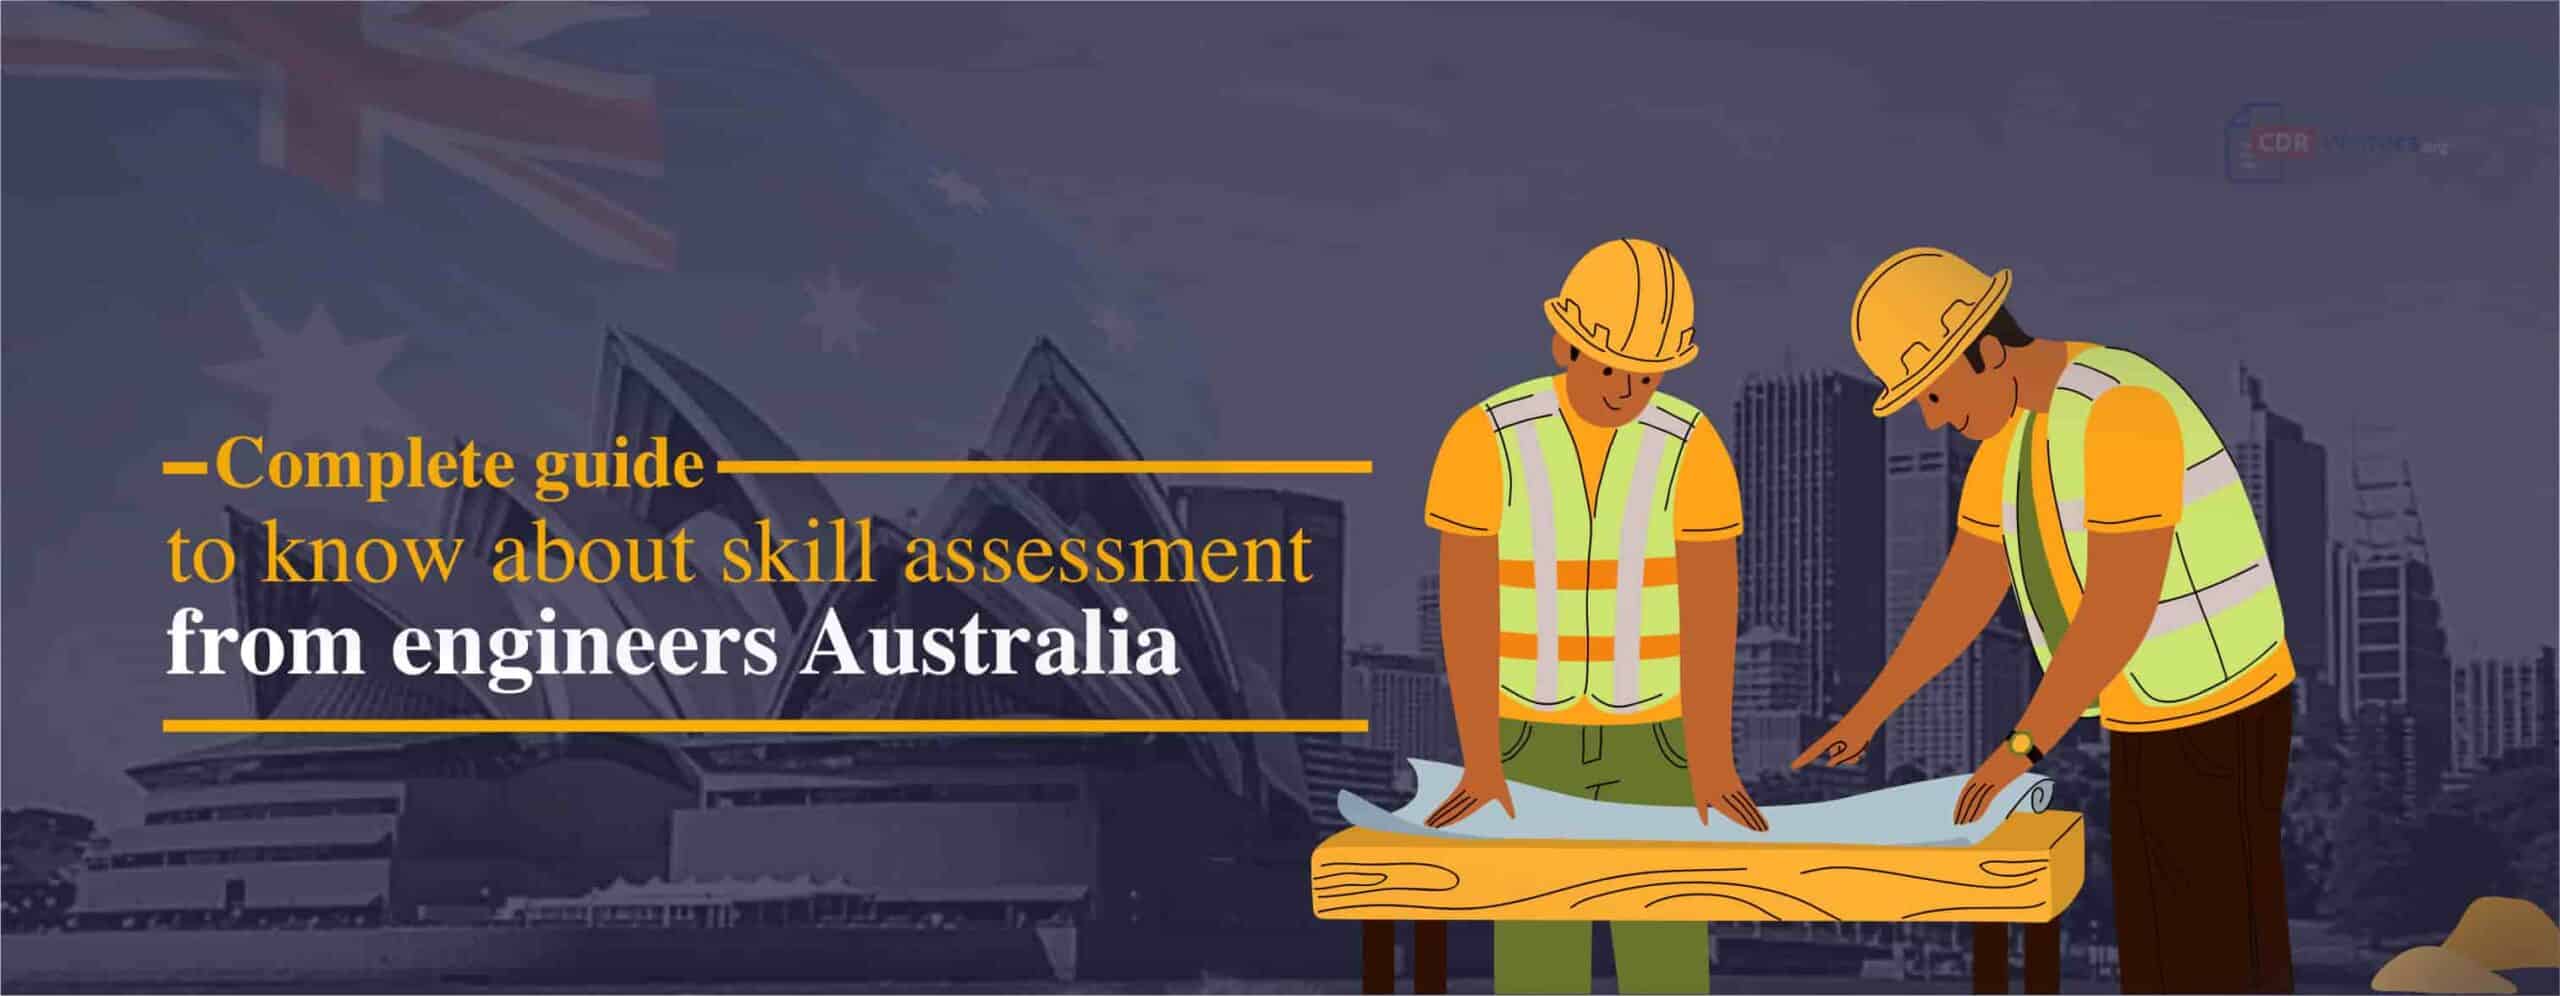 engineers australia skill assessment